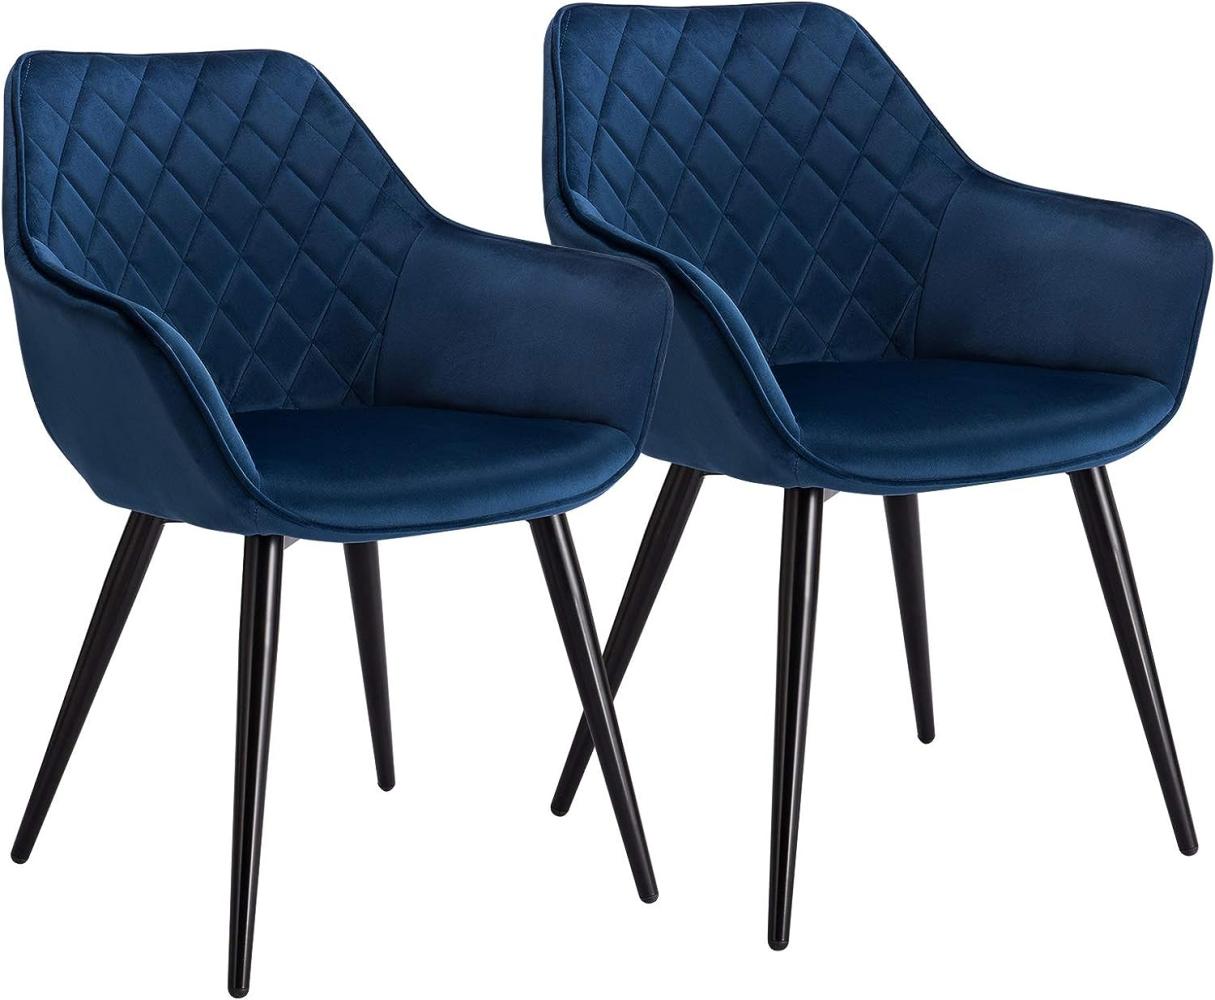 WOLTU Esszimmerstühle BH153bl-2 2er Set Küchenstühle Wohnzimmerstuhl Polsterstuhl Design Stuhl mit Armlehne Samt Gestell aus Stahl Blau Bild 1